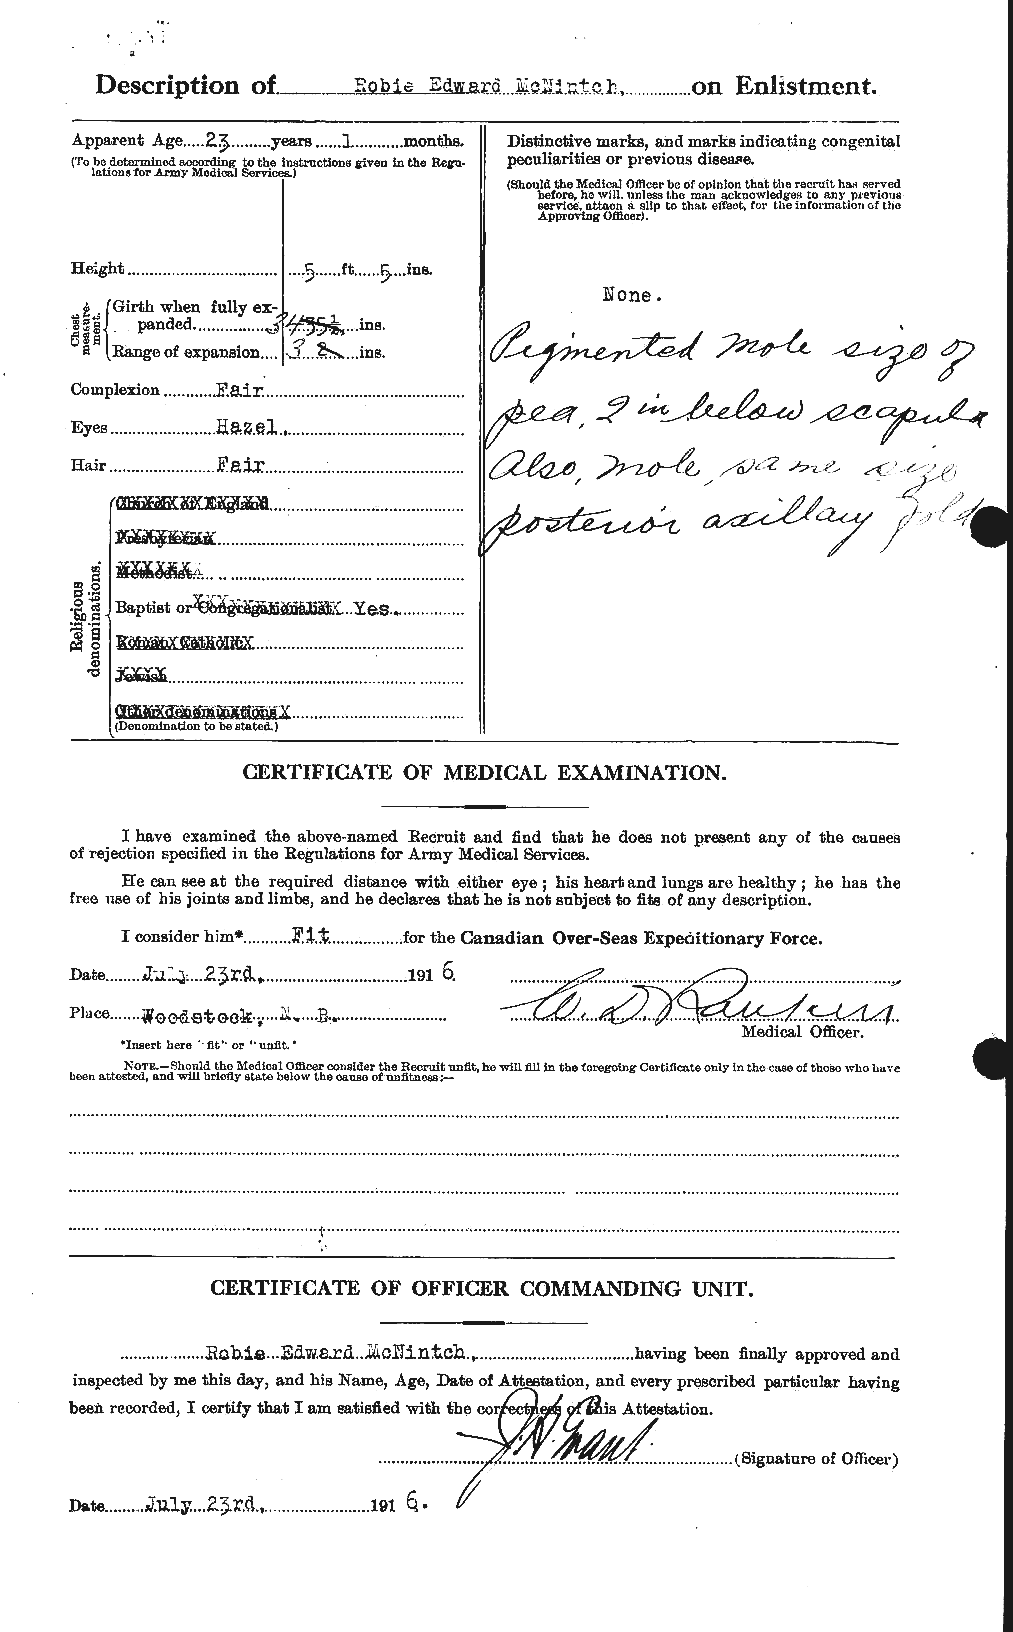 Dossiers du Personnel de la Première Guerre mondiale - CEC 539269b